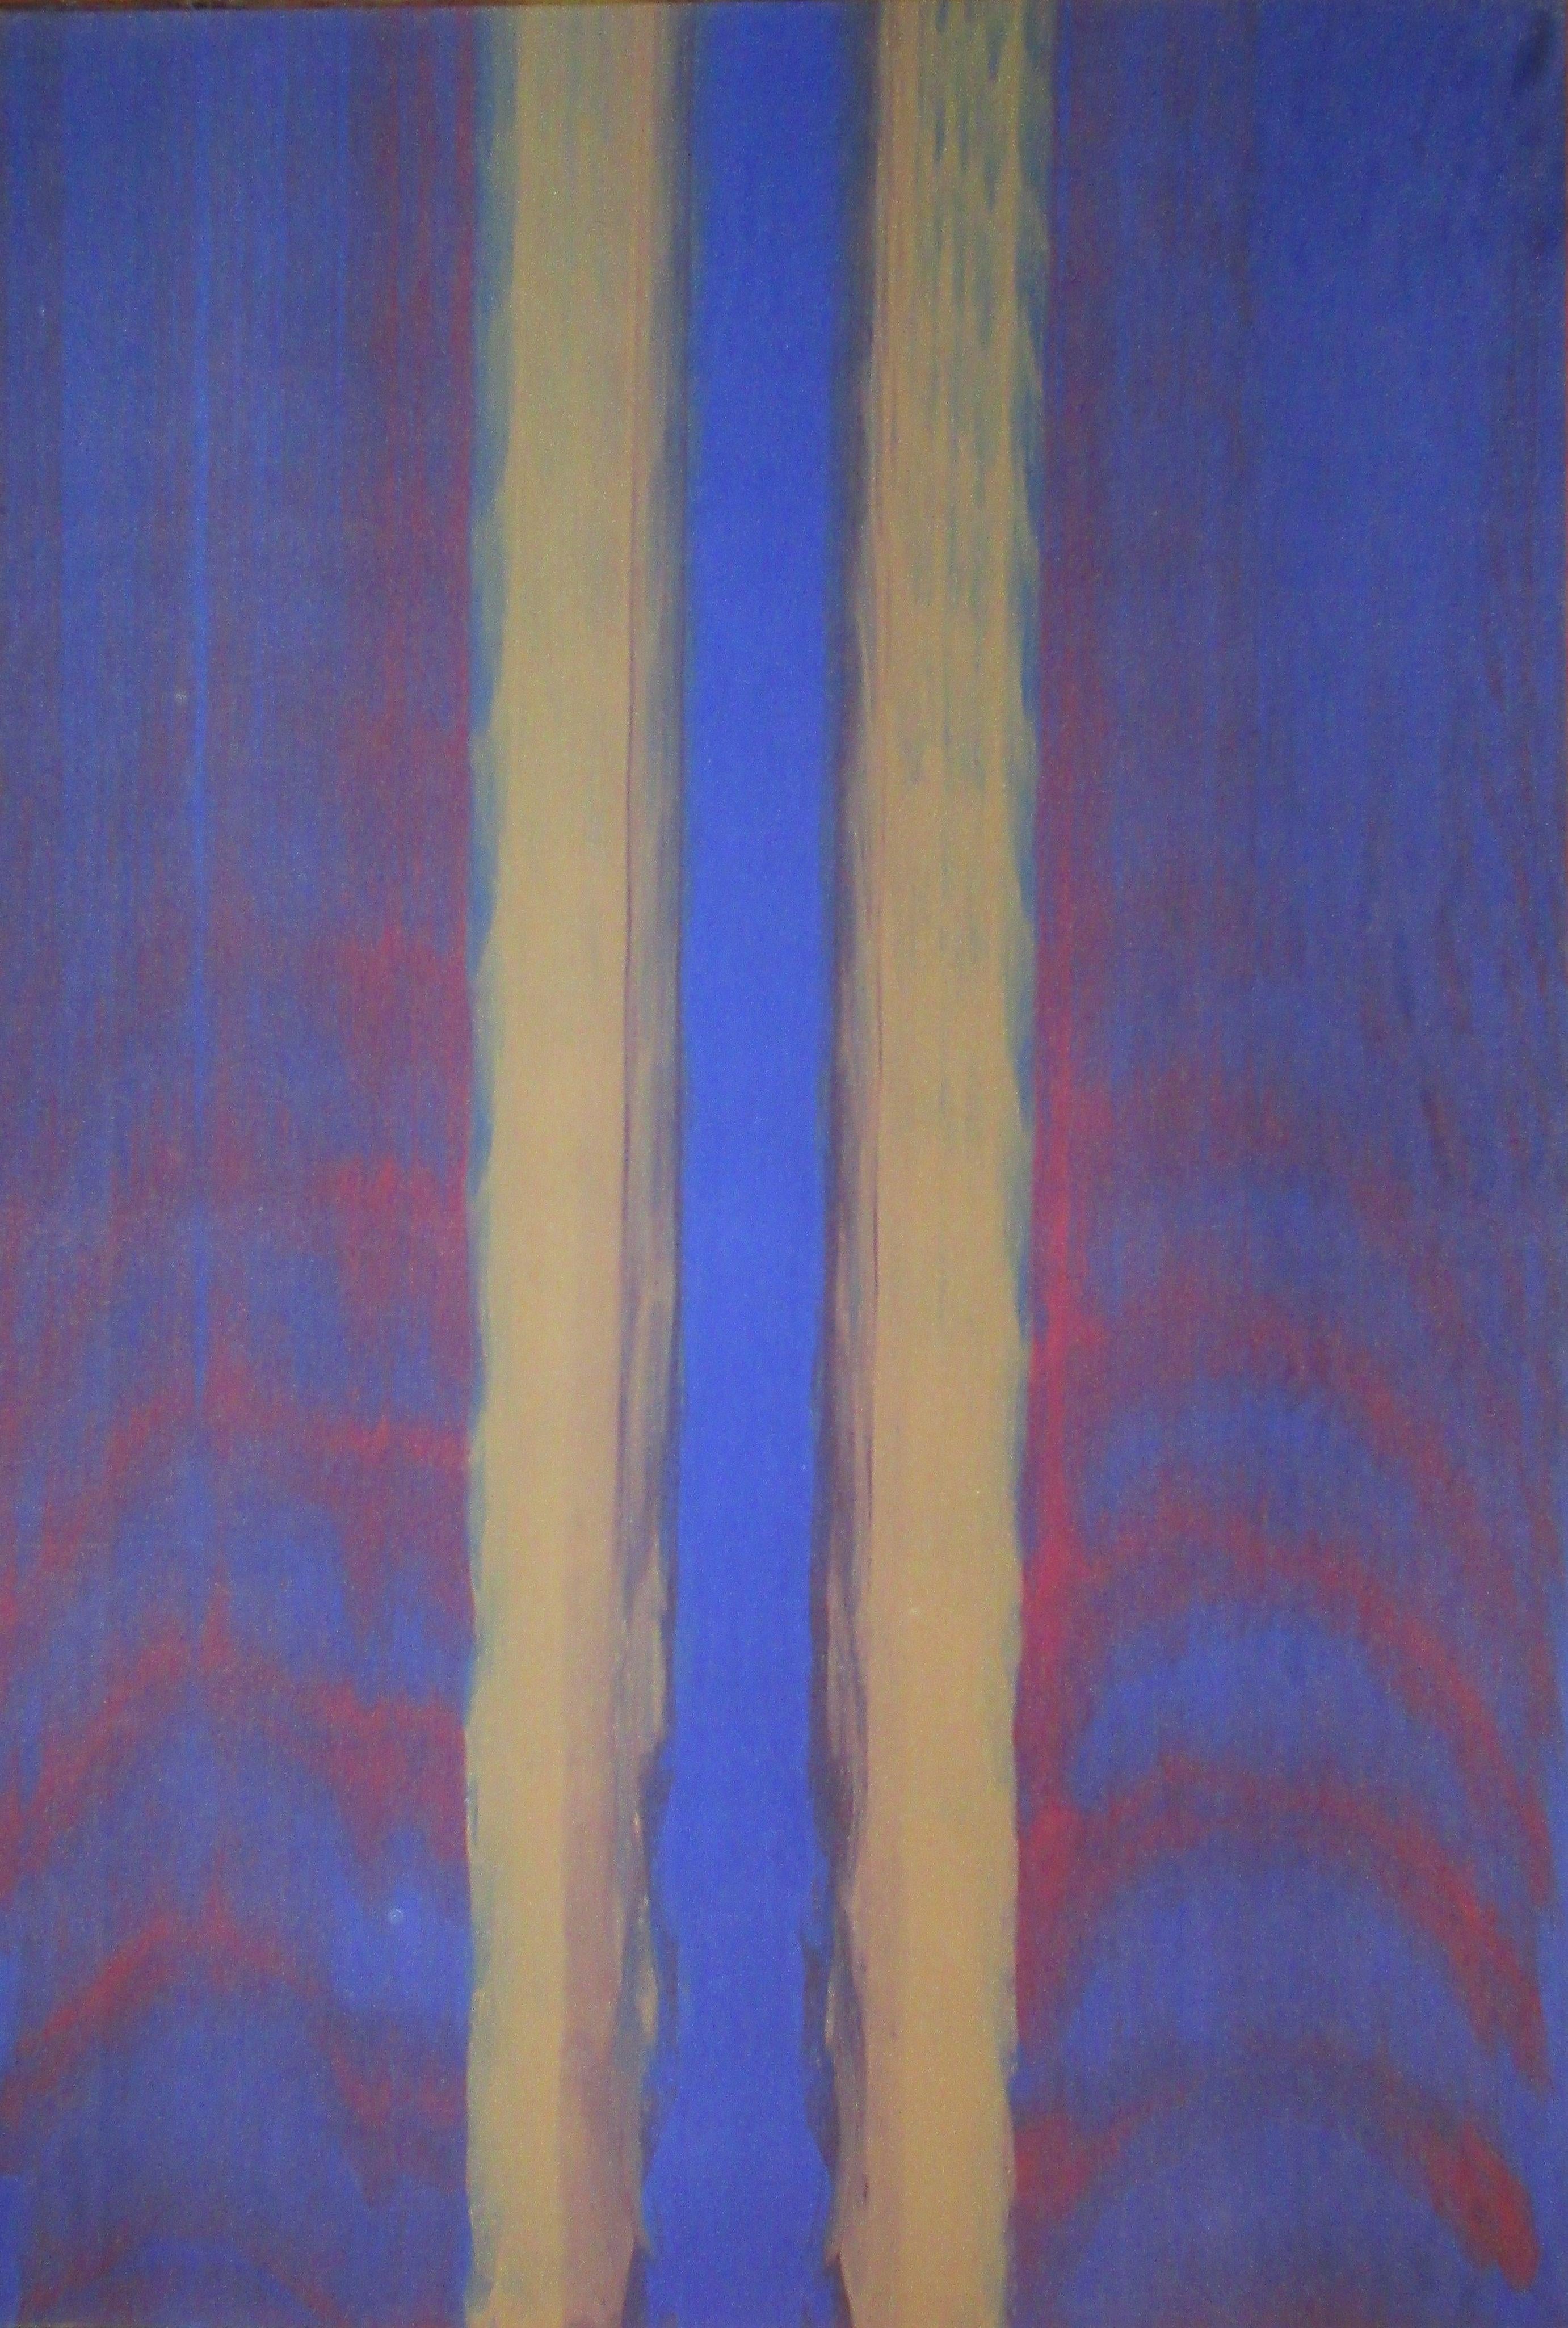 Gene Hedge
Inside Blue, 1966
Acrylique sur toile
61 1/4 x 43 3/4 pouces
(P124)

Gene Hedge est né (1928) et a grandi dans l'Indiana rural. Après son service militaire, il a brièvement fréquenté l'université Ball State à Muncie, dans l'Indiana. Il y